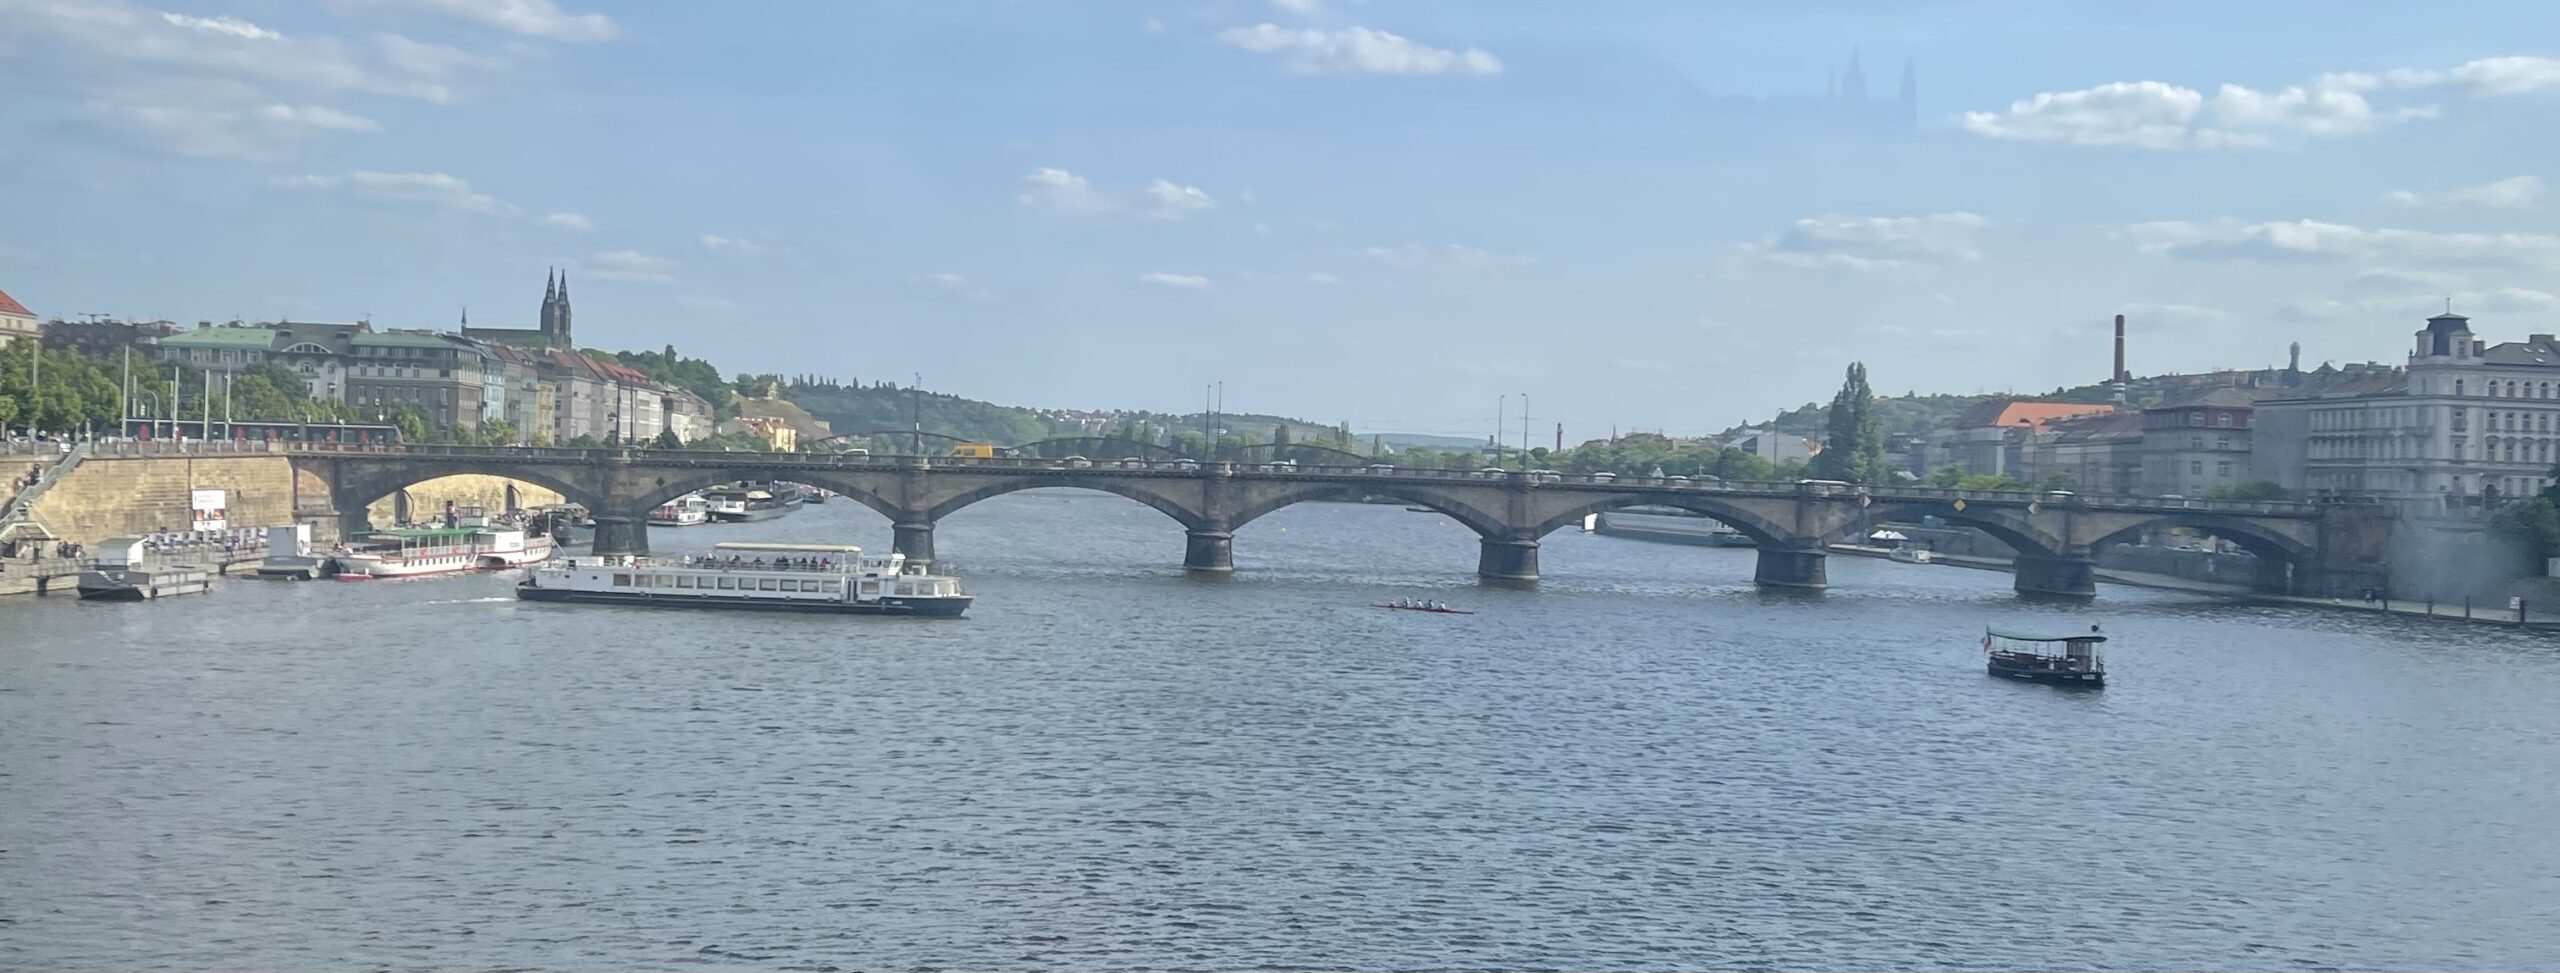 The Charles Bridge See Prague in 48 Hours